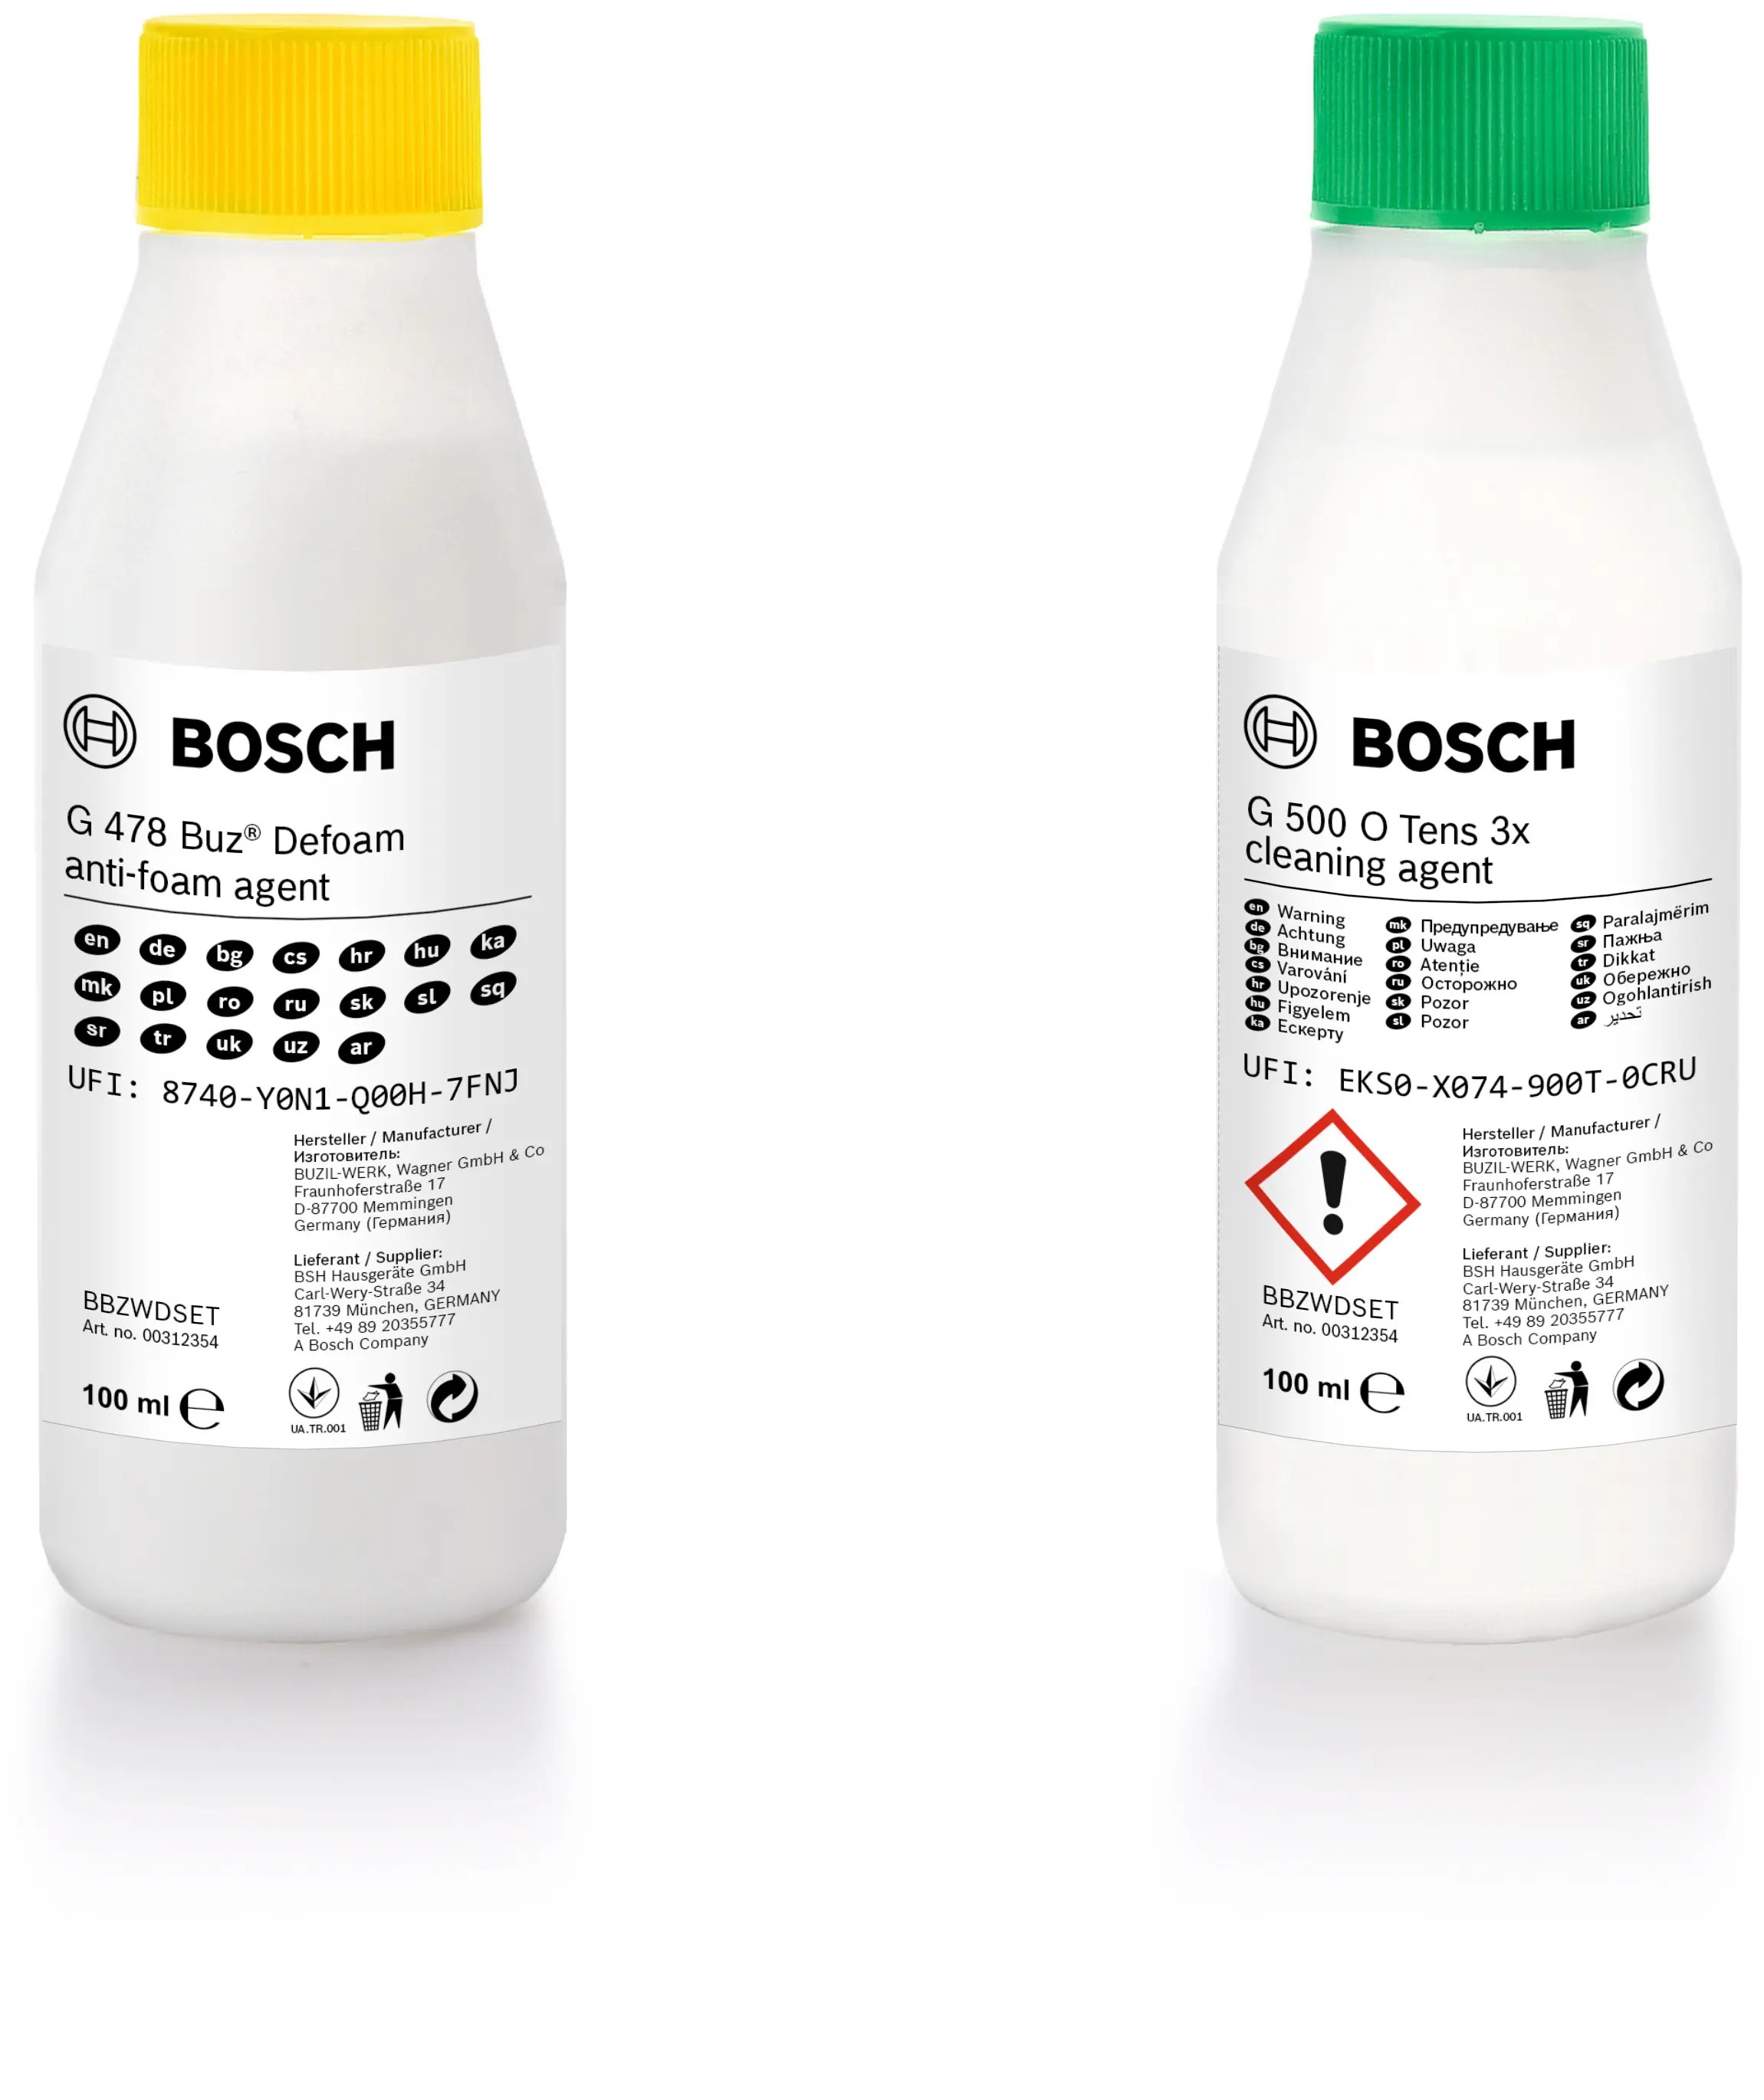 Відгуки миючий засіб Bosch BBZWDSET